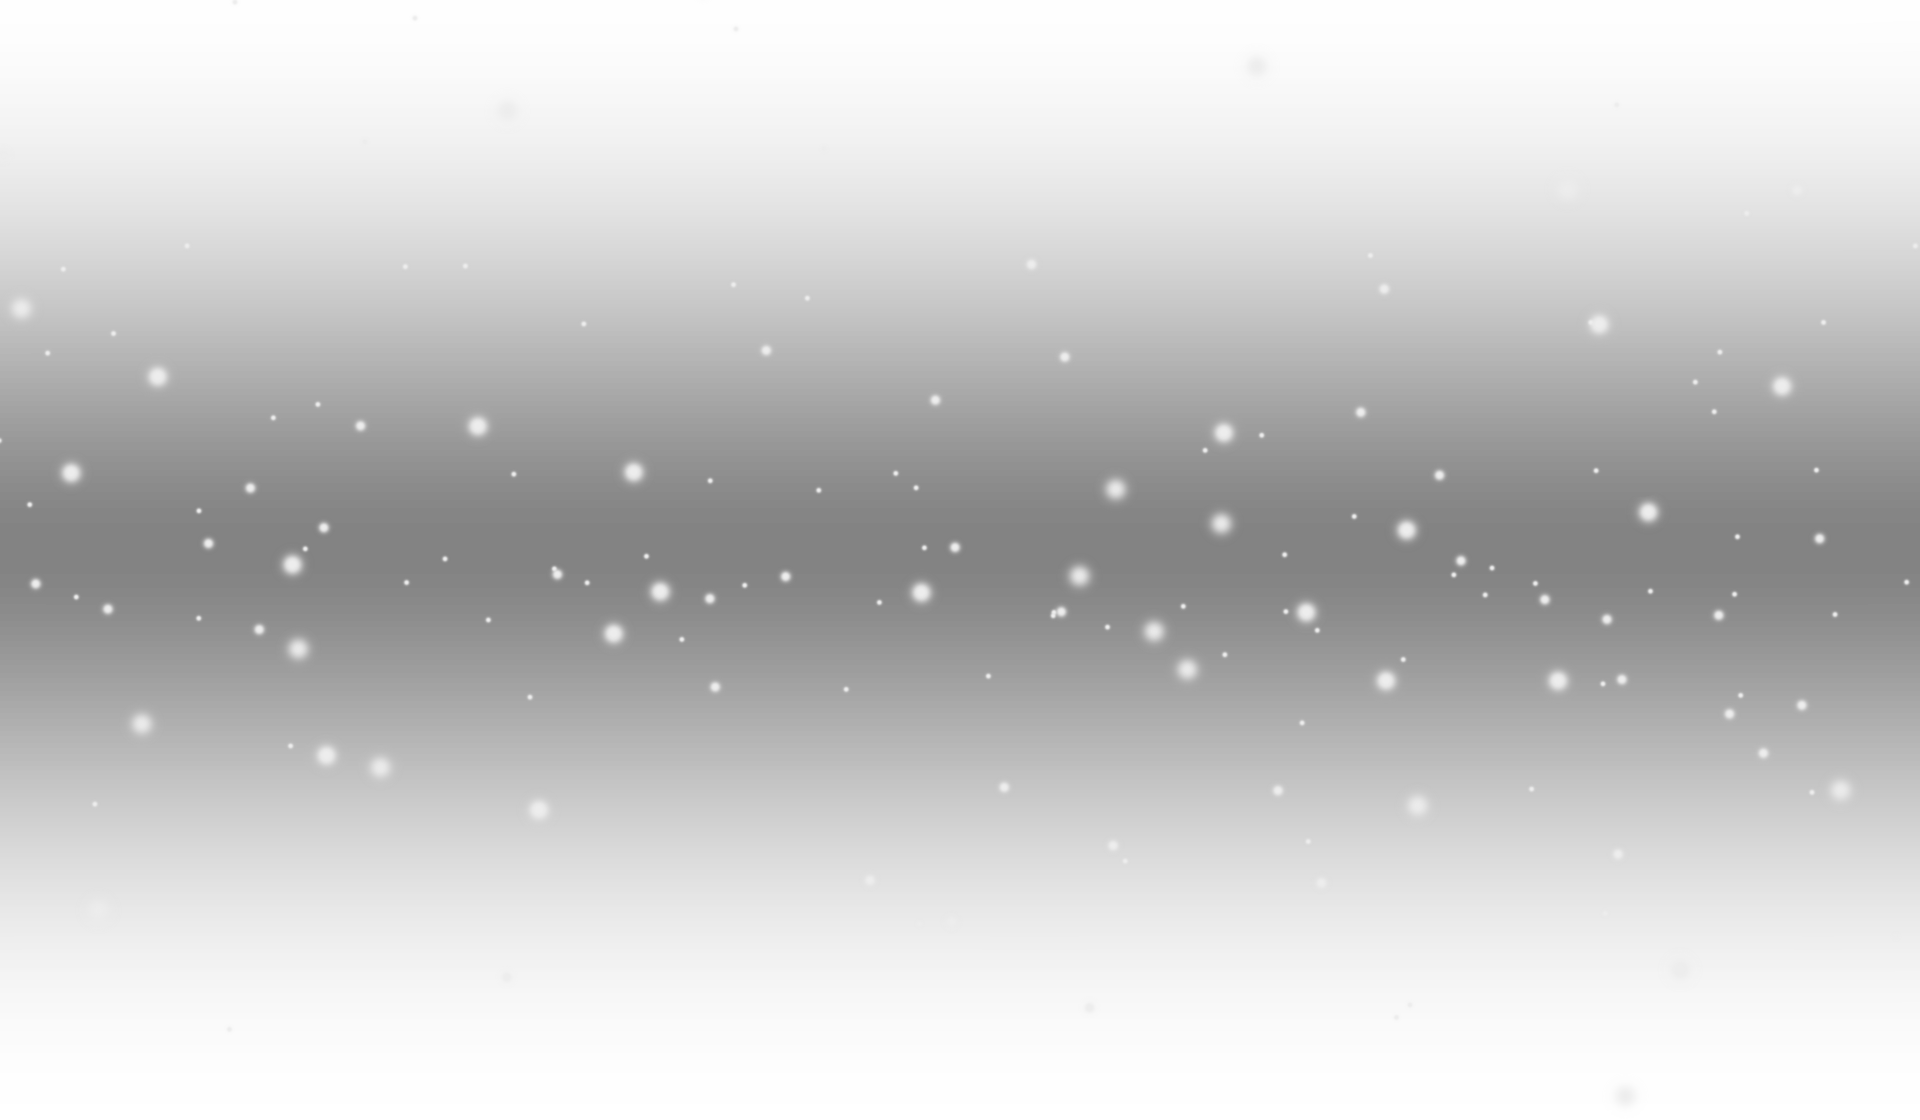 Hãy cùng ngắm nhìn họa tiết những vì sao lung linh như trong cổ tích với bức ảnh liên quan đến Twinkle star pattern này. Sẽ thật hấp dẫn khi bạn bị cuốn hút vào bầu trời đêm lấp lánh những ánh sao nhỏ xinh.